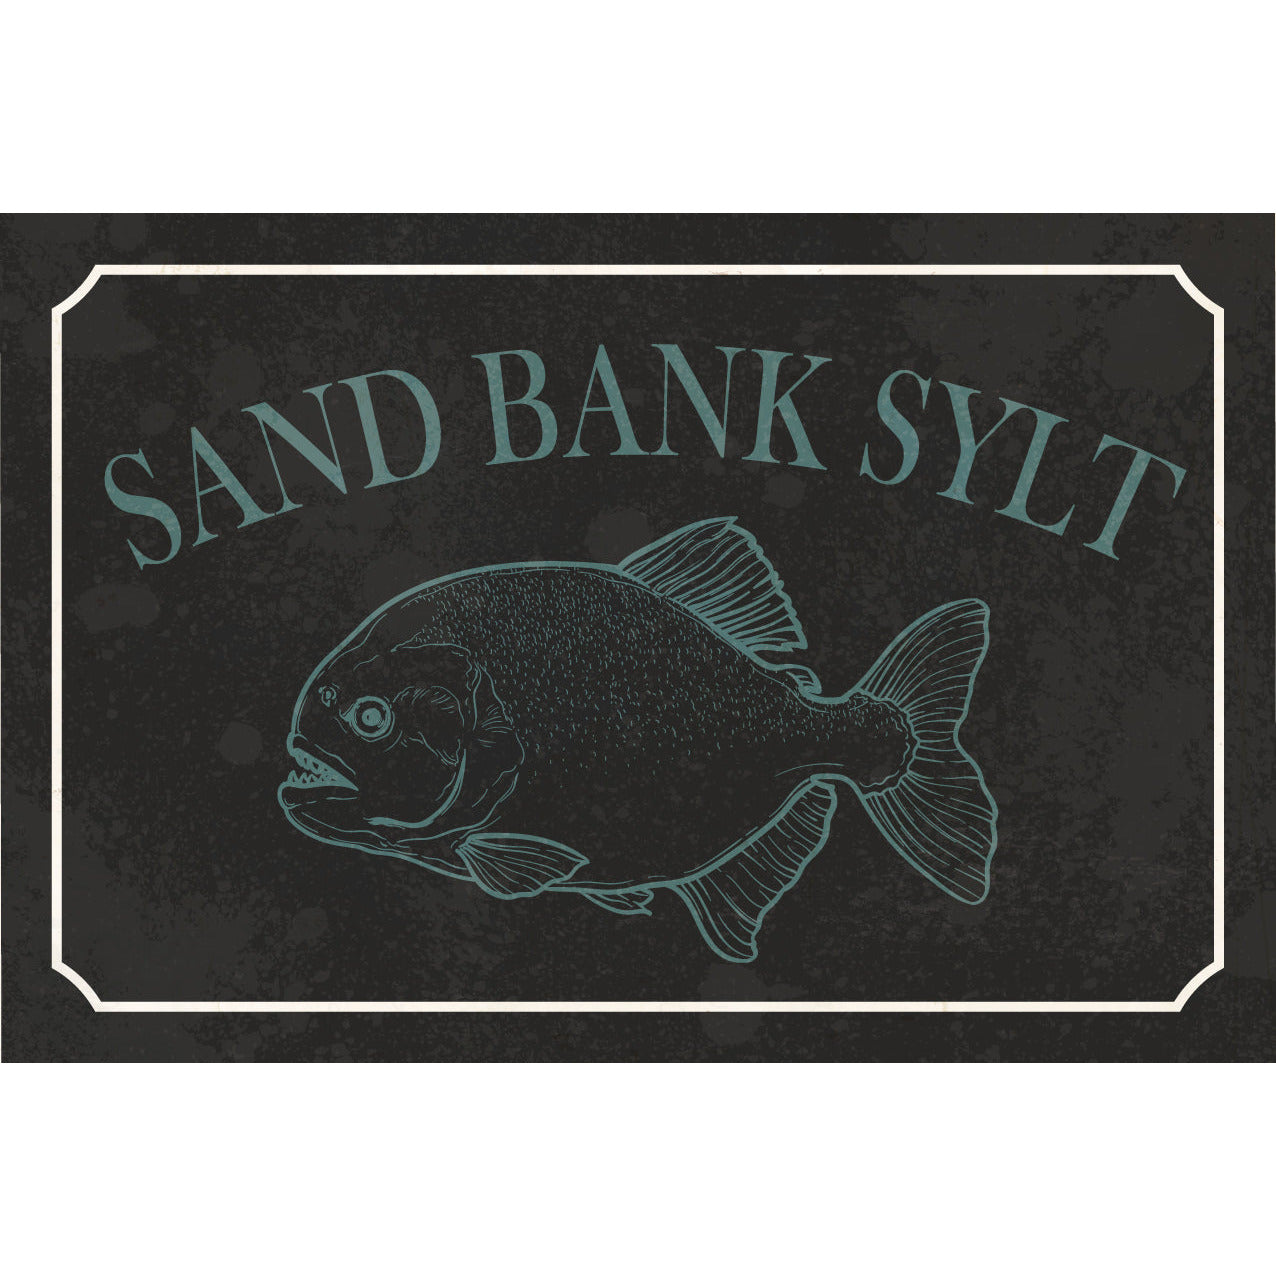 Blechschild - Sand Bank Sylt